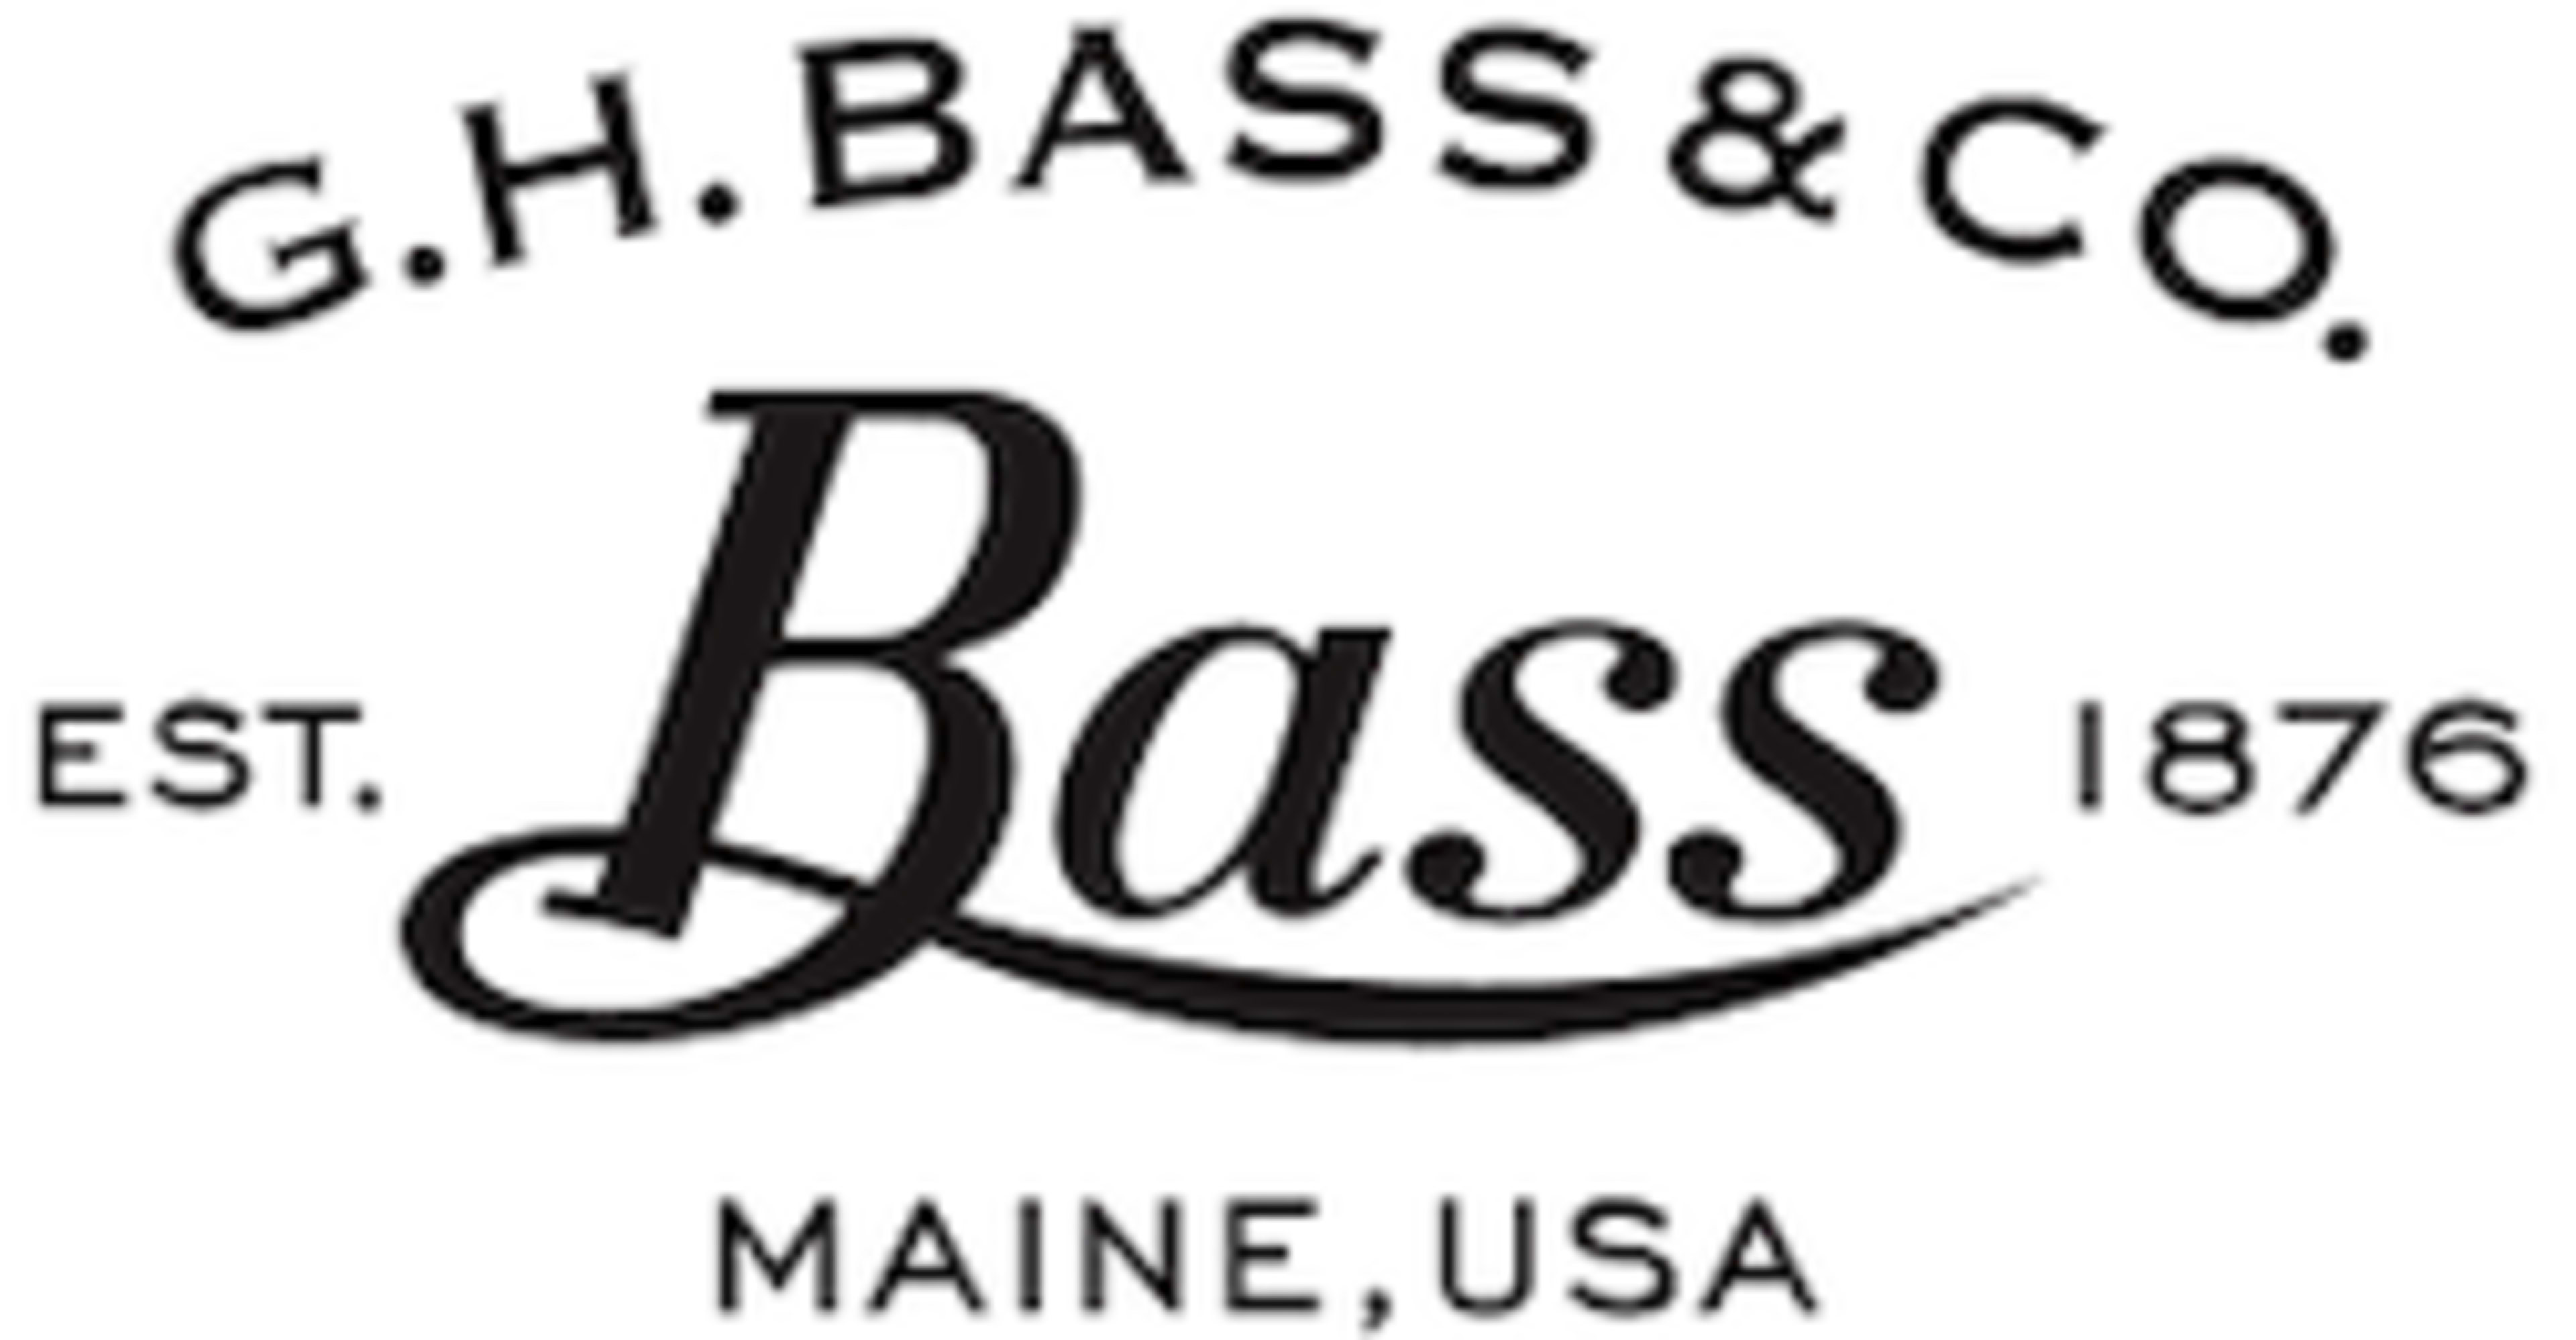 G.H. Bass Code